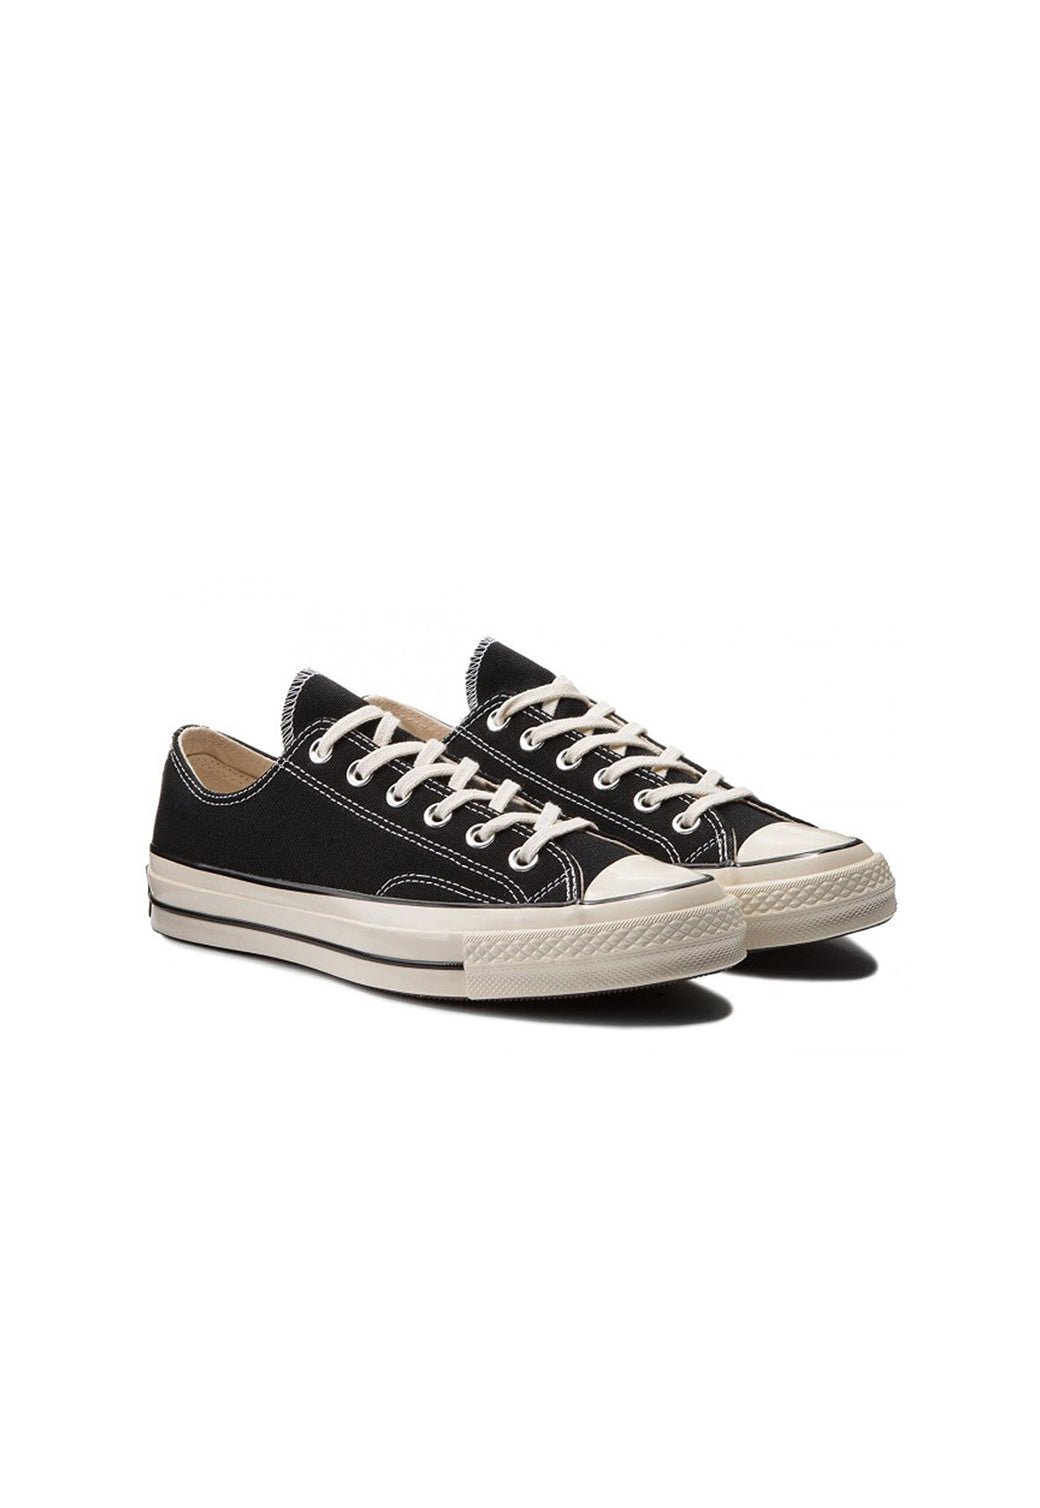 נעלי אולסטאר Chuck 70 נמוכות בצבע שחור לנשים - Converse